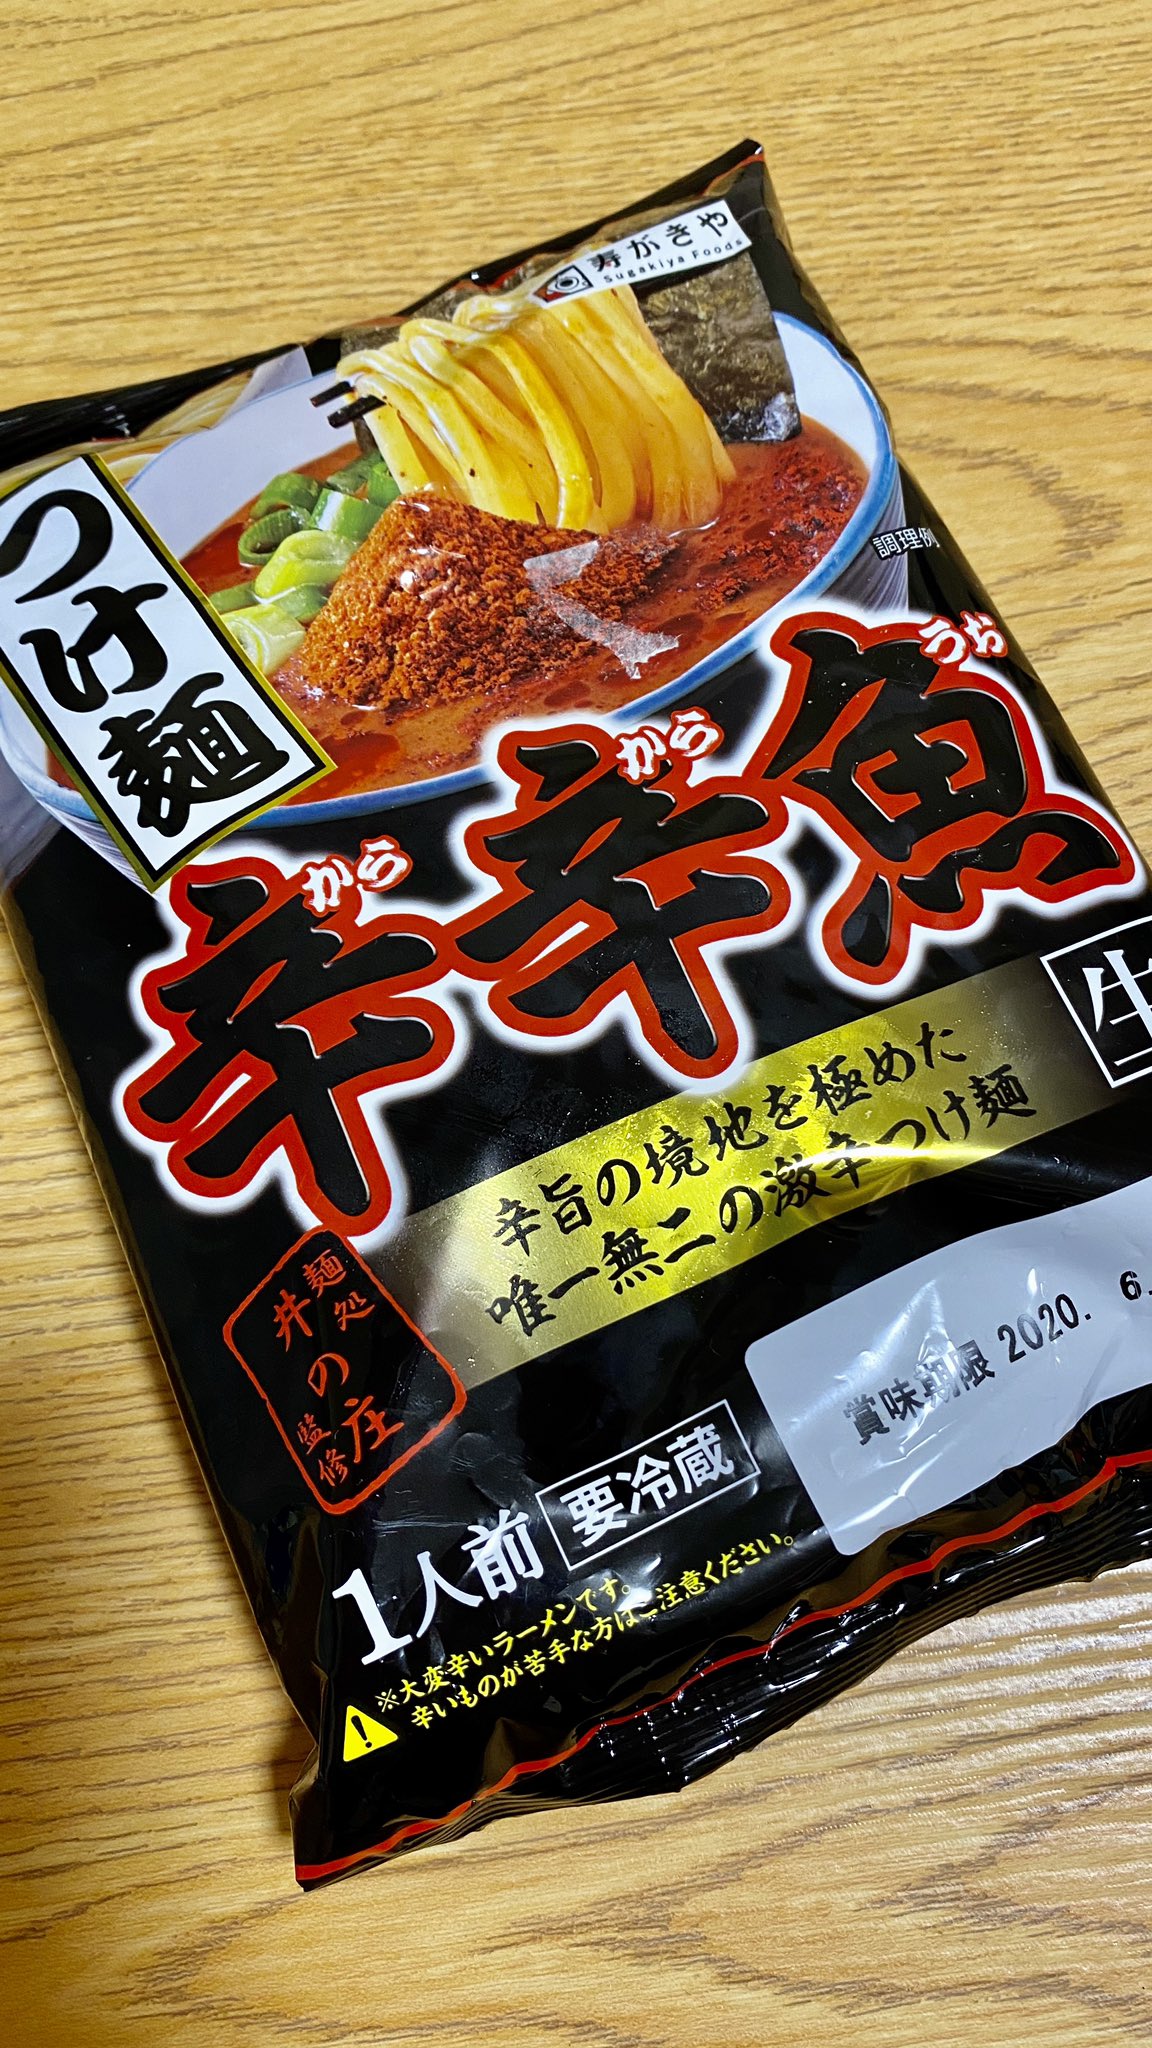 Kouranos Nagoya A Twitteren スーパーで見つけた 辛辛魚 のつけ麺がなかなかクオリティ高い これはこの夏に必須アイテムになりそう 辛辛魚 つけ麺 激辛 辛うま T Co Eprw3cmeit Twitter